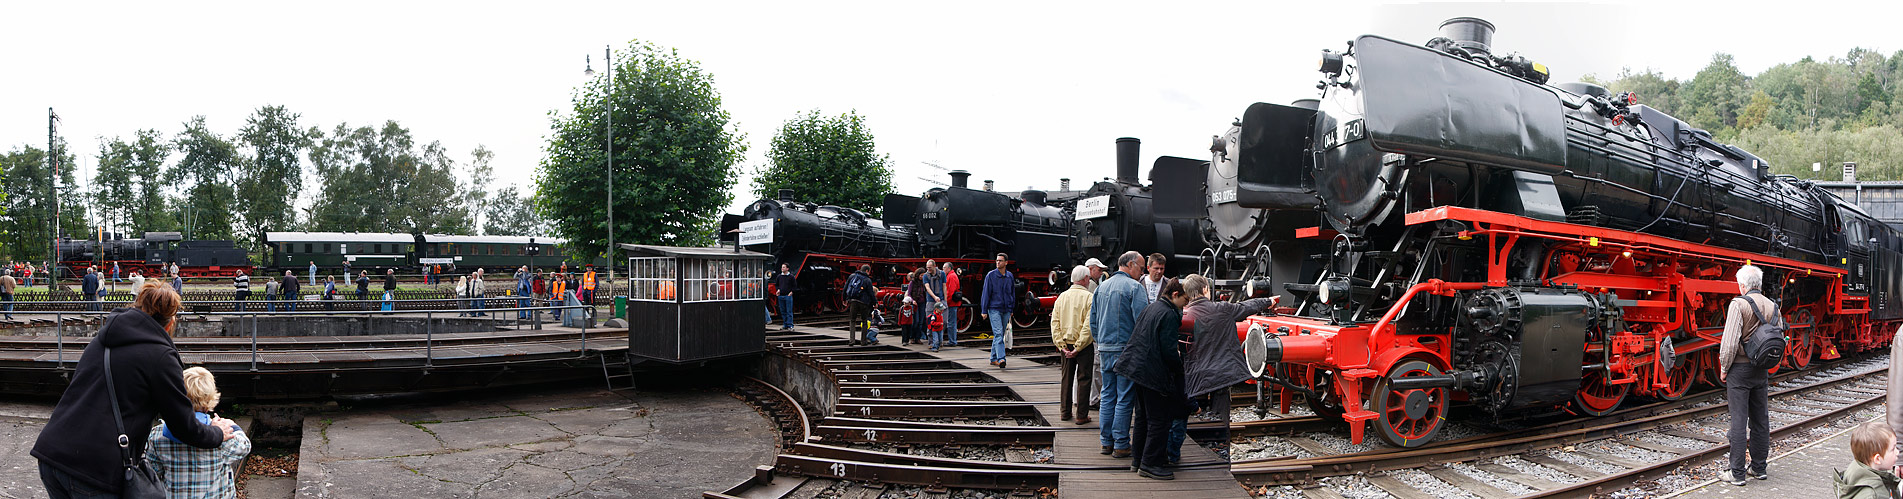 Eisenbahnmuseum Bochum-Dahlhausen (1)